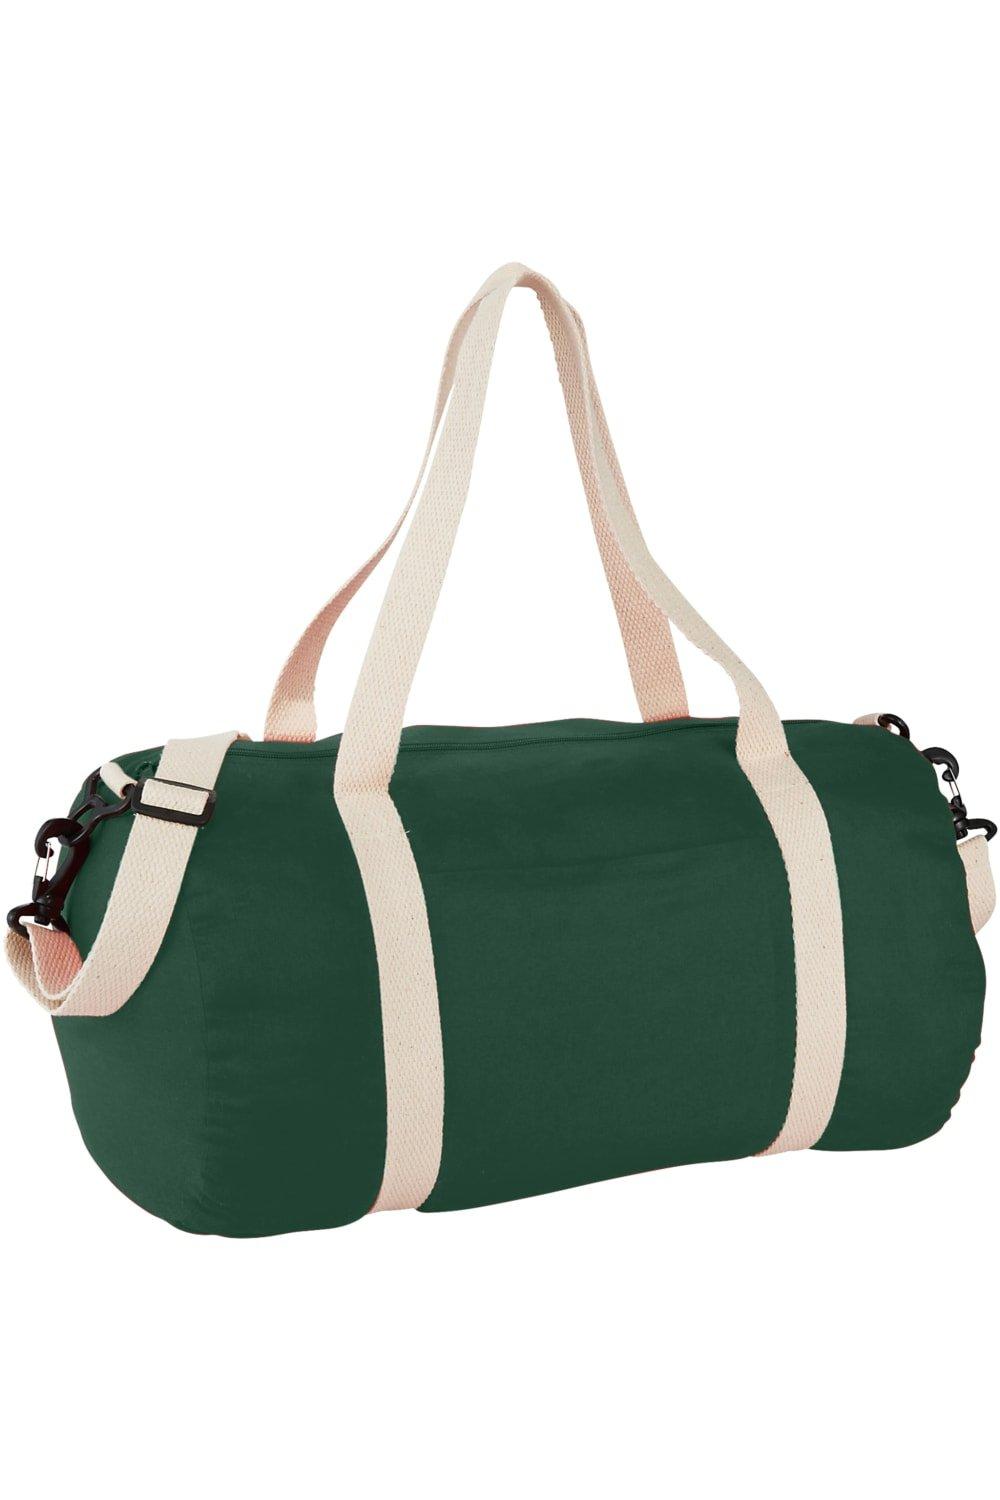 Хлопковая бочковая спортивная сумка (2 шт.) Bullet, зеленый